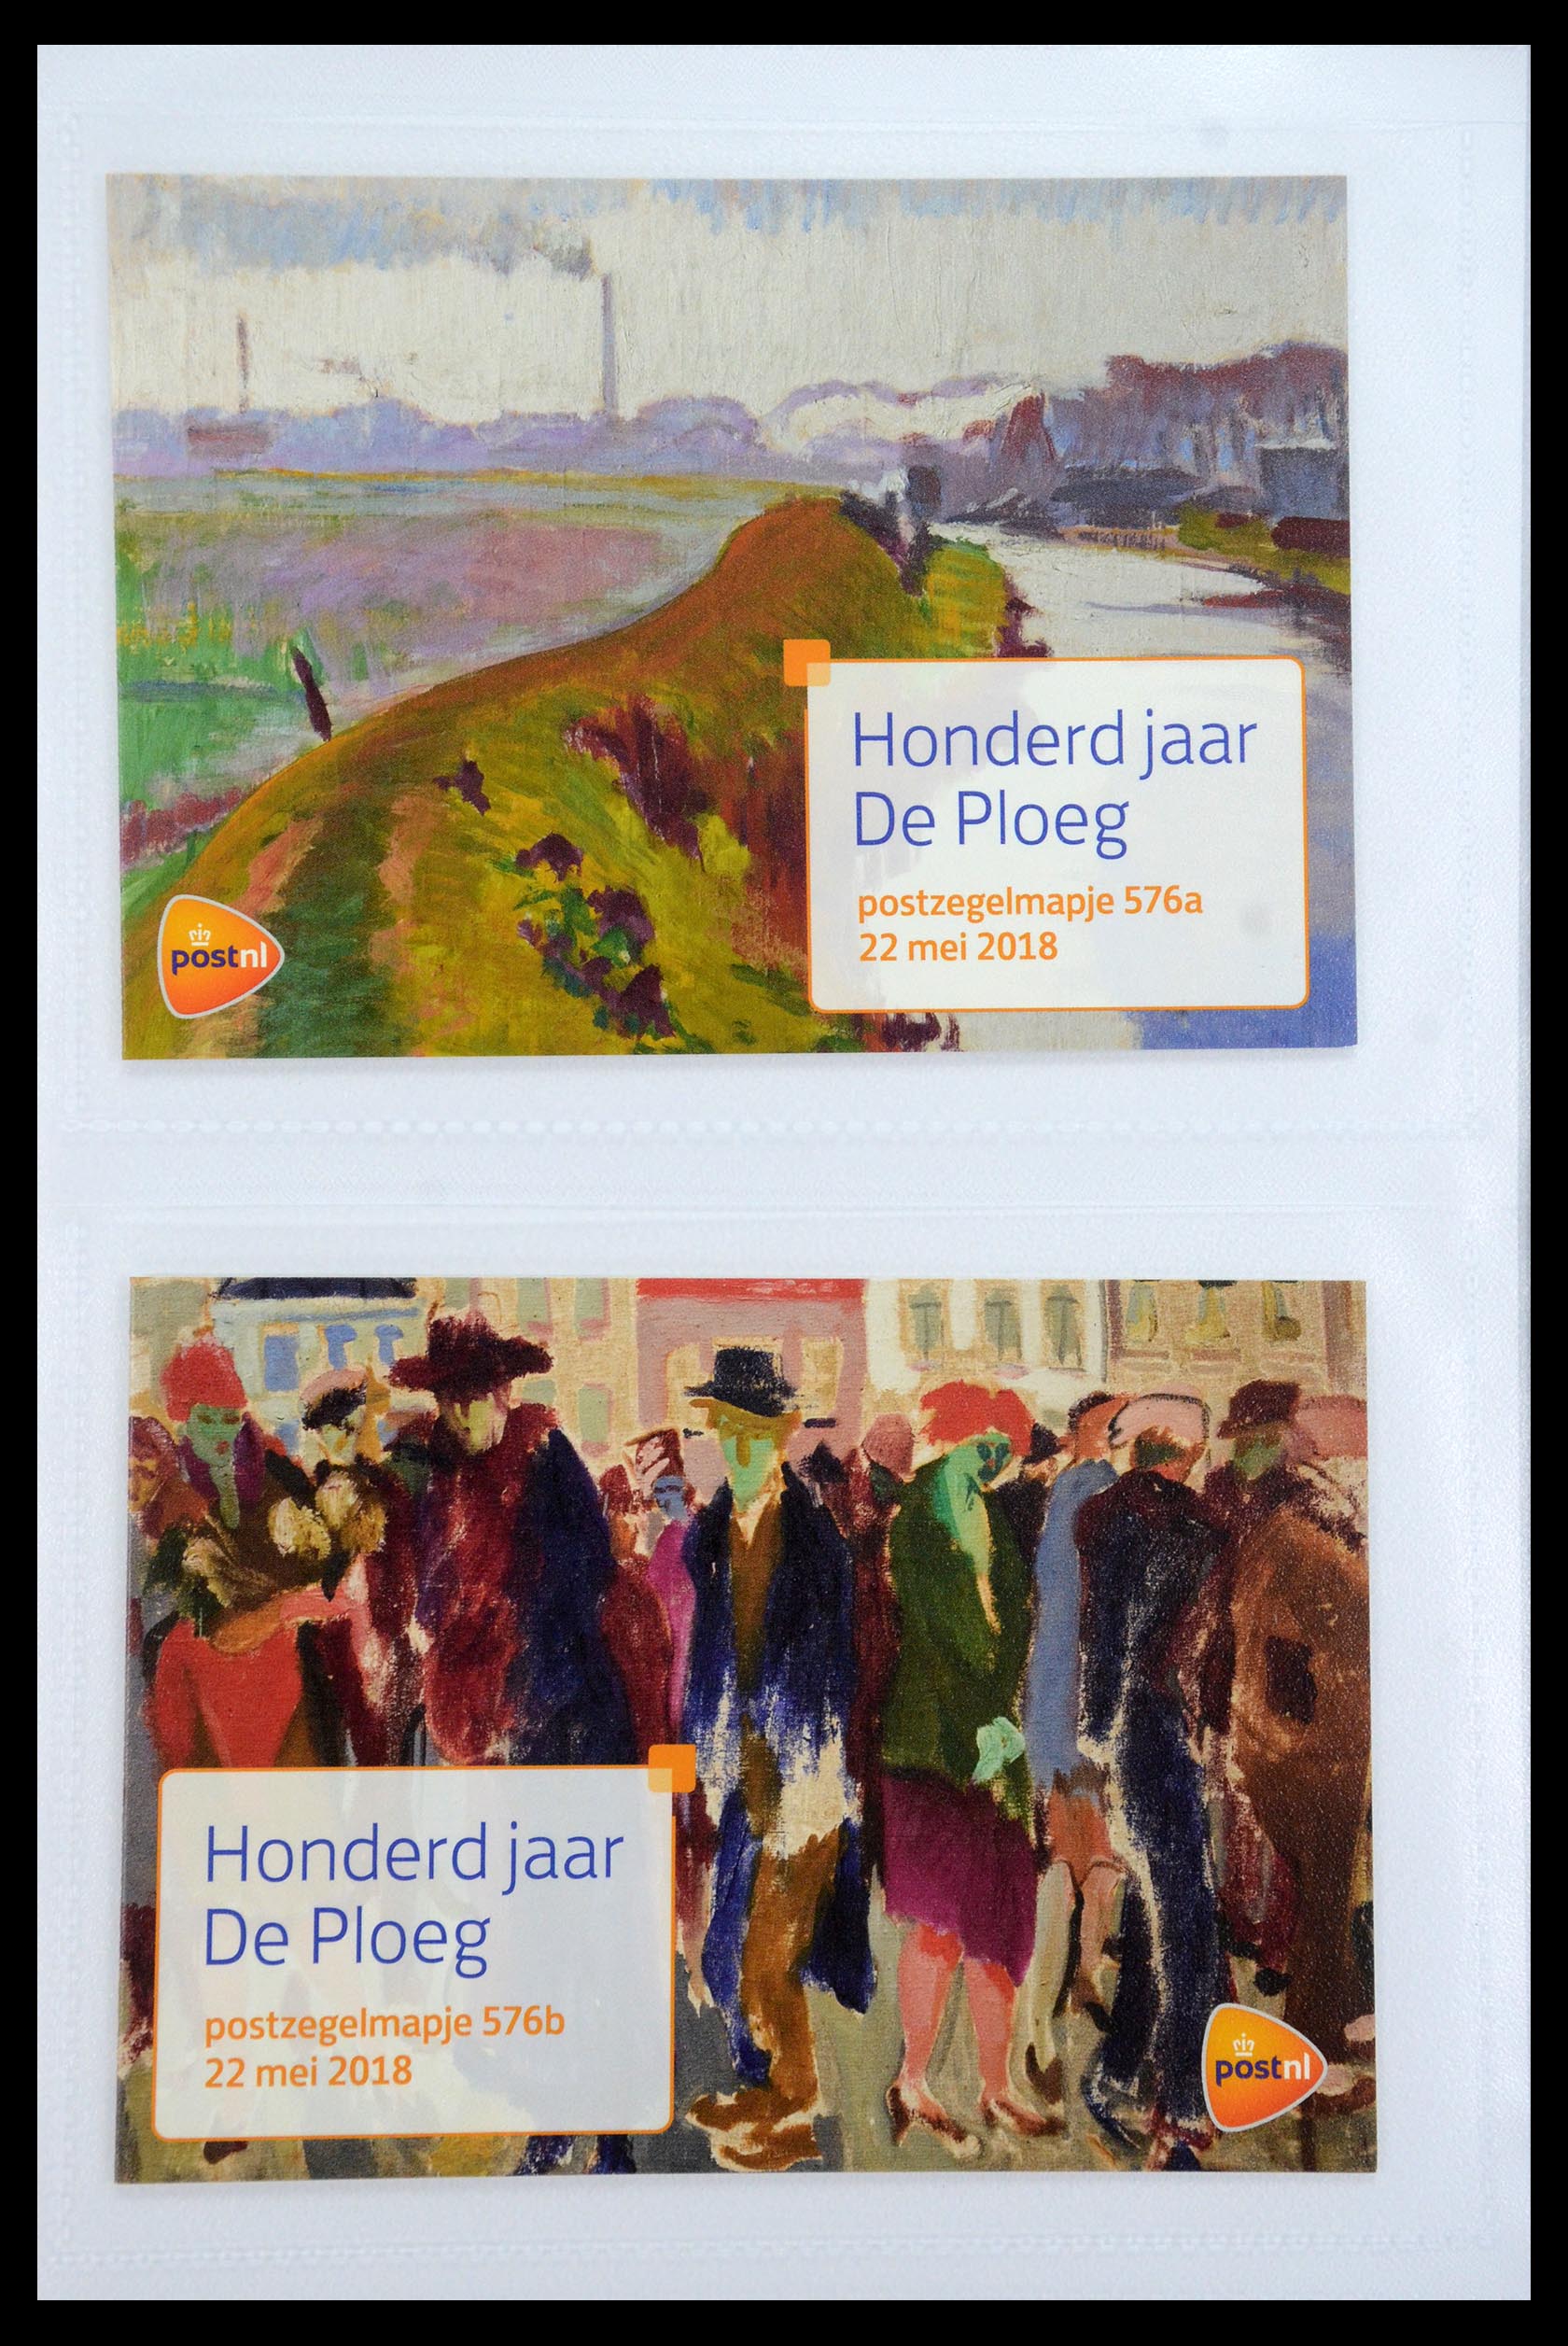 35947 347 - Stamp Collection 35947 Netherlands PTT presentation packs 1982-2019!